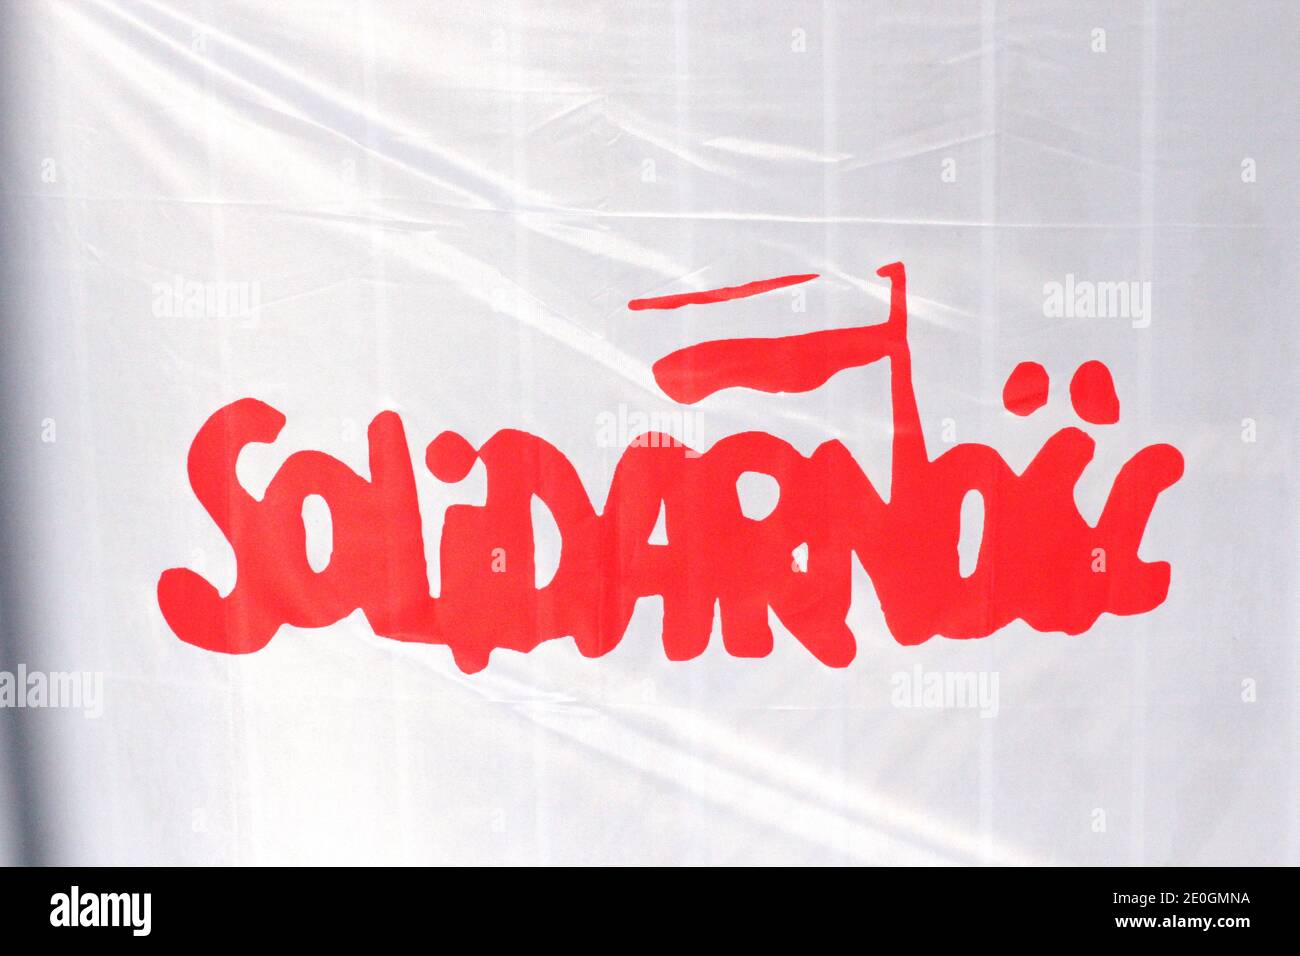 Signe de solidarité, syndicat non gouvernemental polonais. La solidarité est considérée comme ayant grandement contribué à la chute du communisme. Banque D'Images